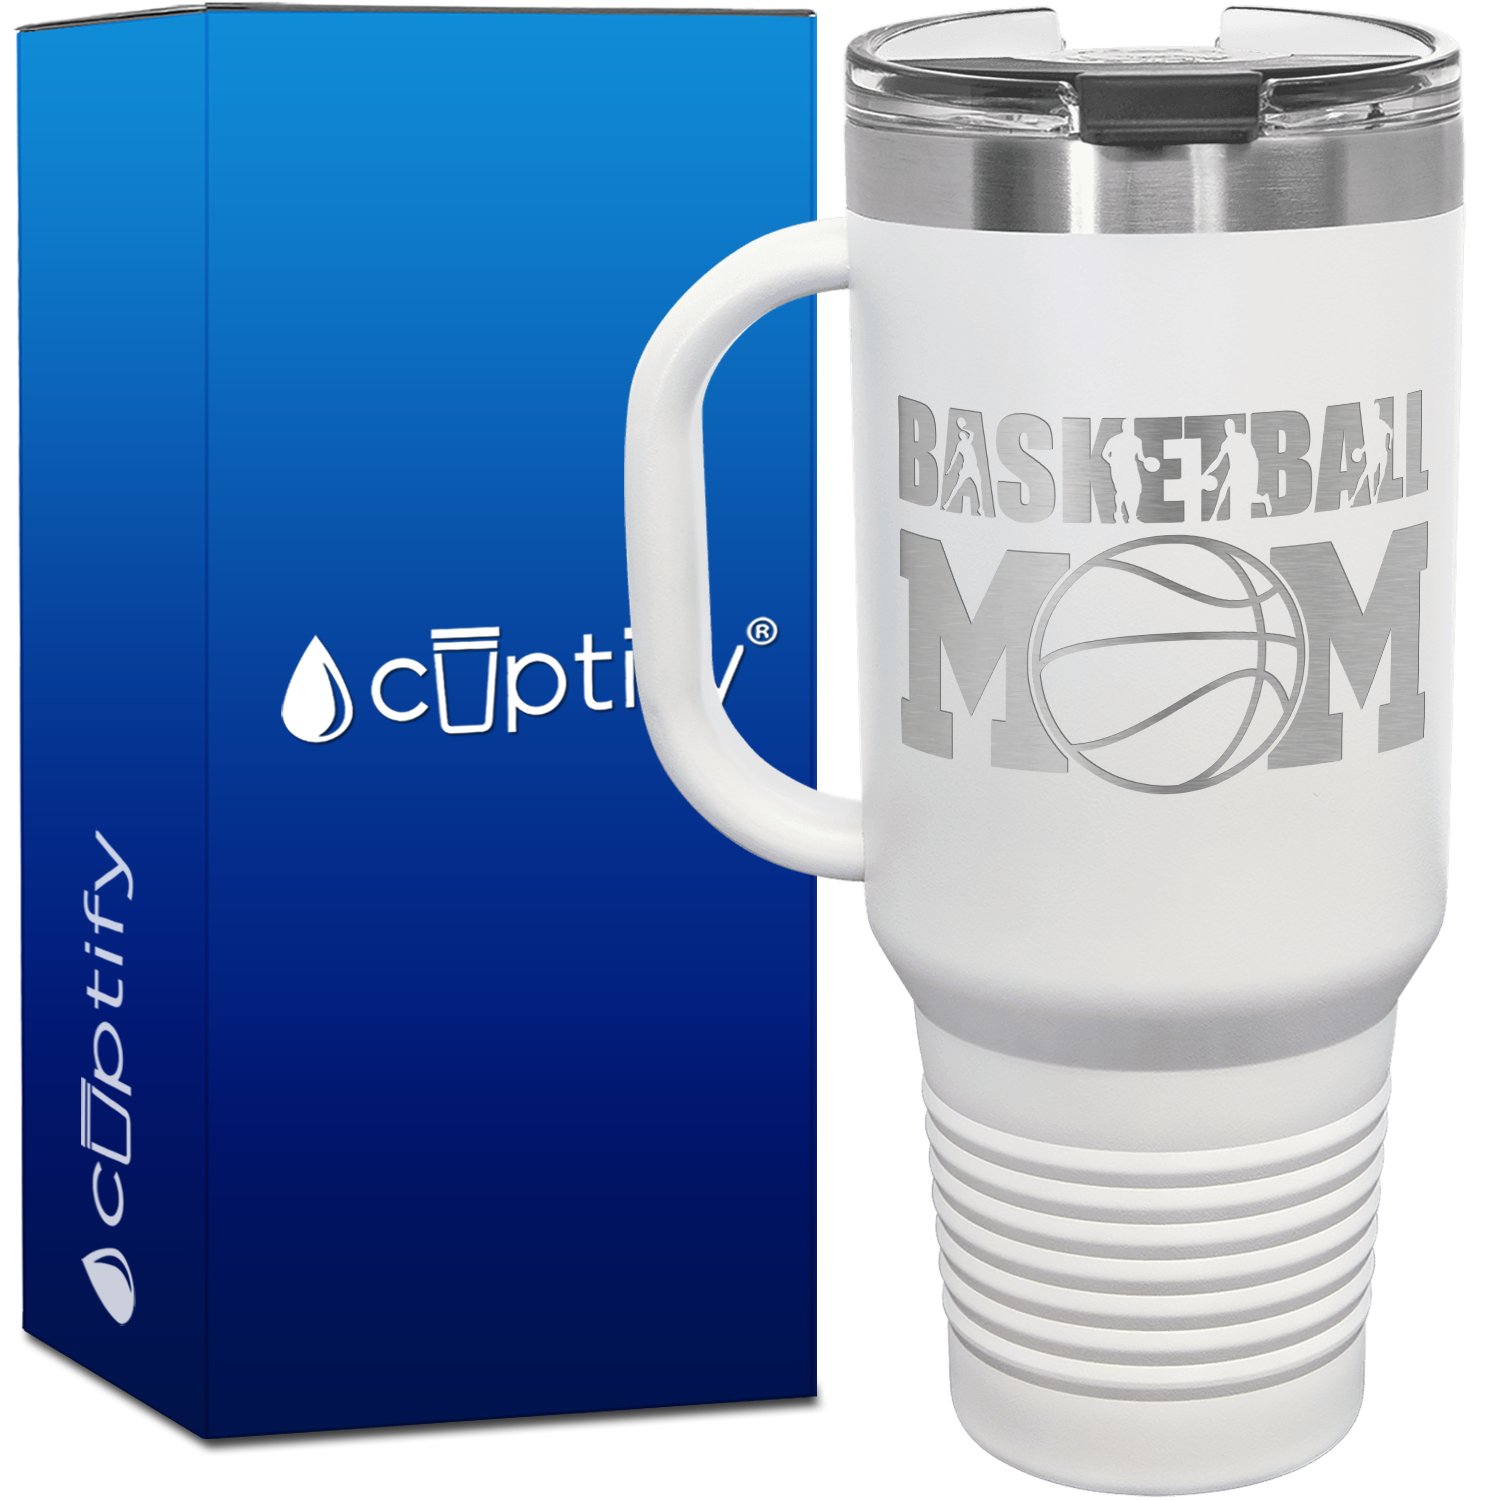 Basketball Mom Player Silhouettes 40oz Basketball Travel Mug